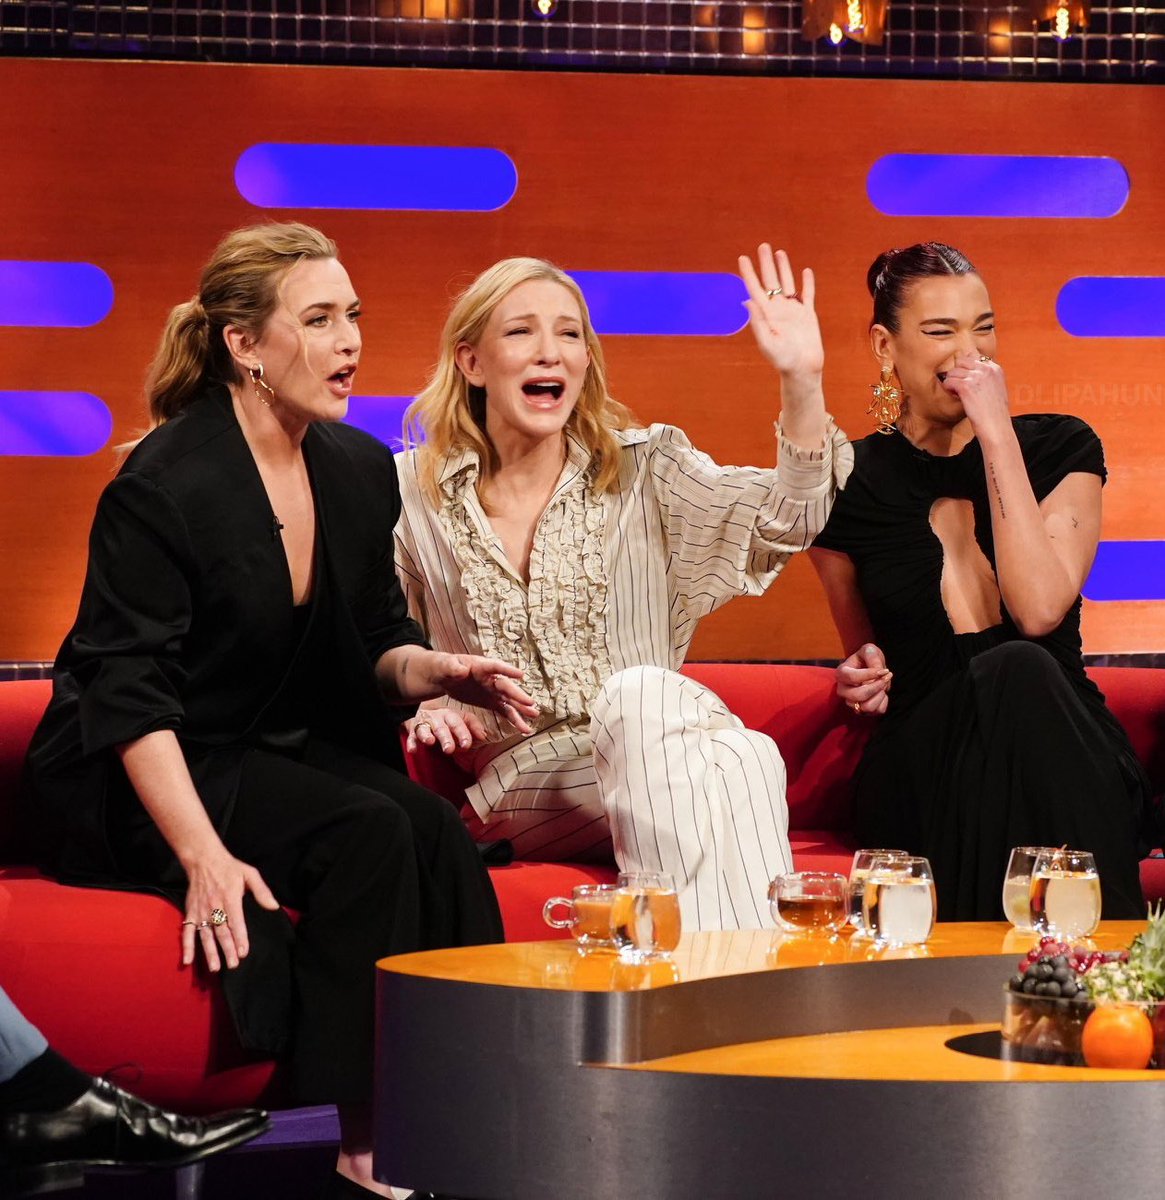 3 queen's Kate Winslet, Cate Blanchett, Dua Lipa
#KateWinslet #CateBlanchett #DuaLipa #GrahamNorton